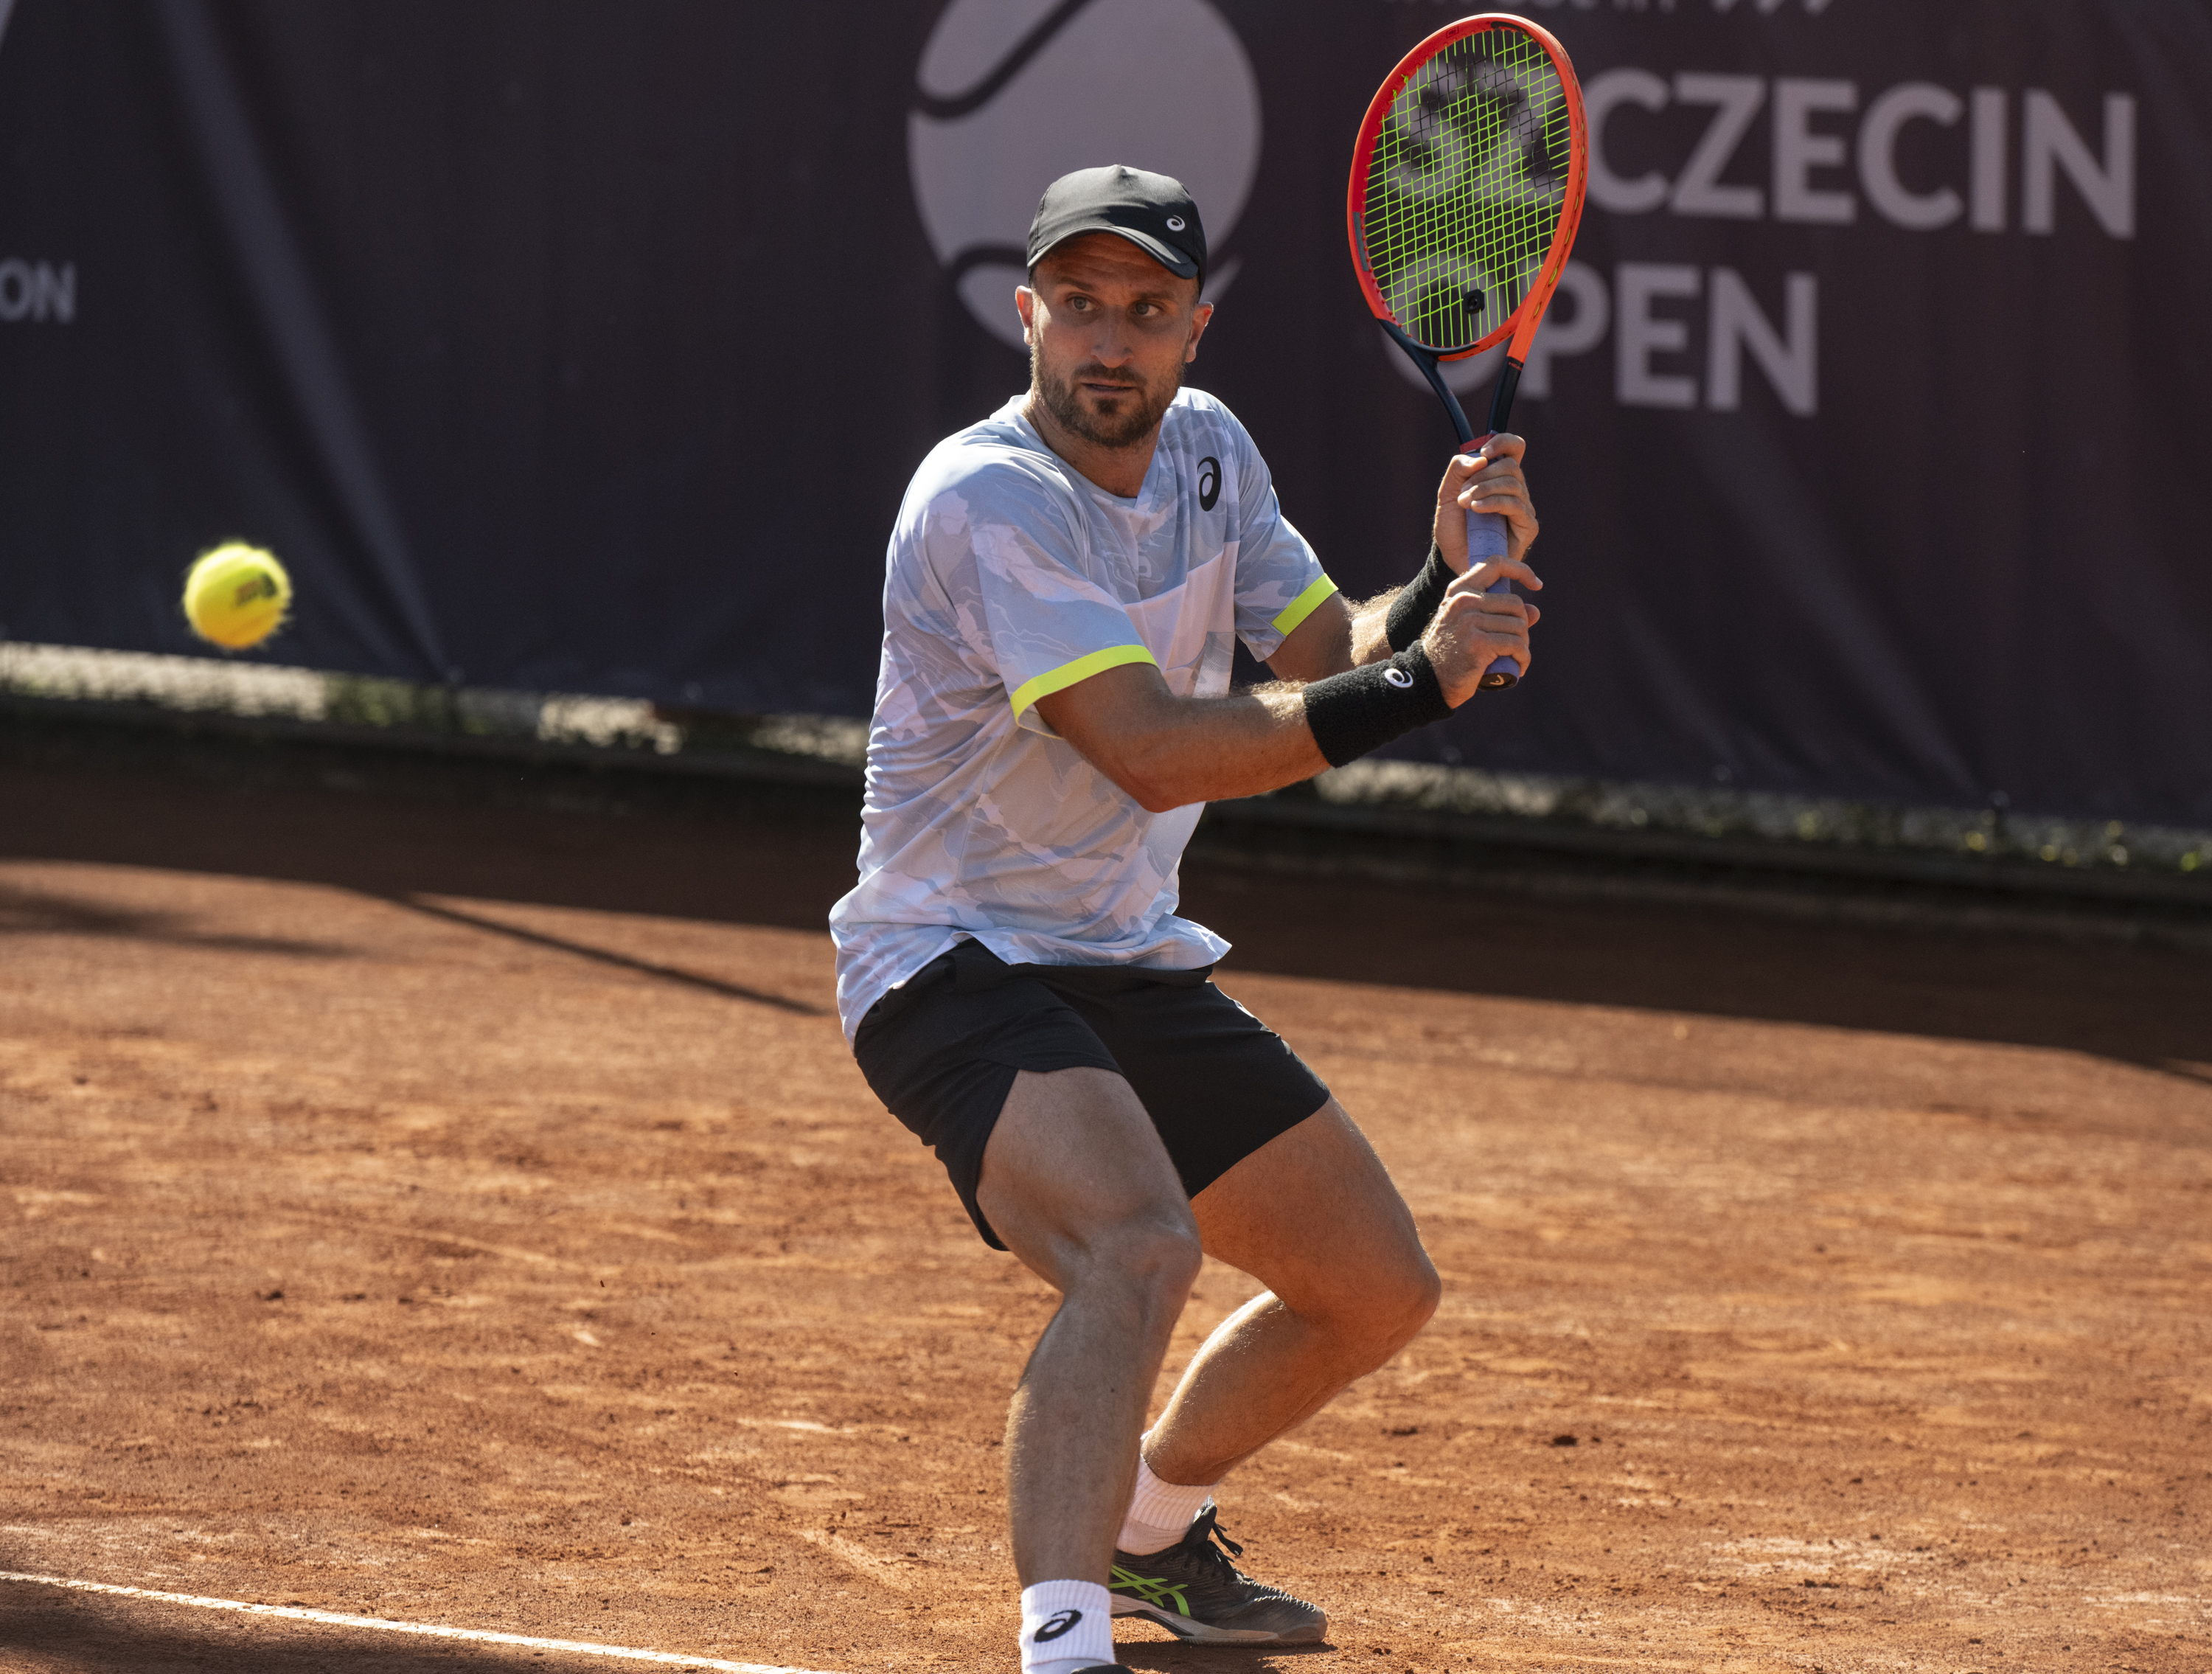 Szczecin Open 